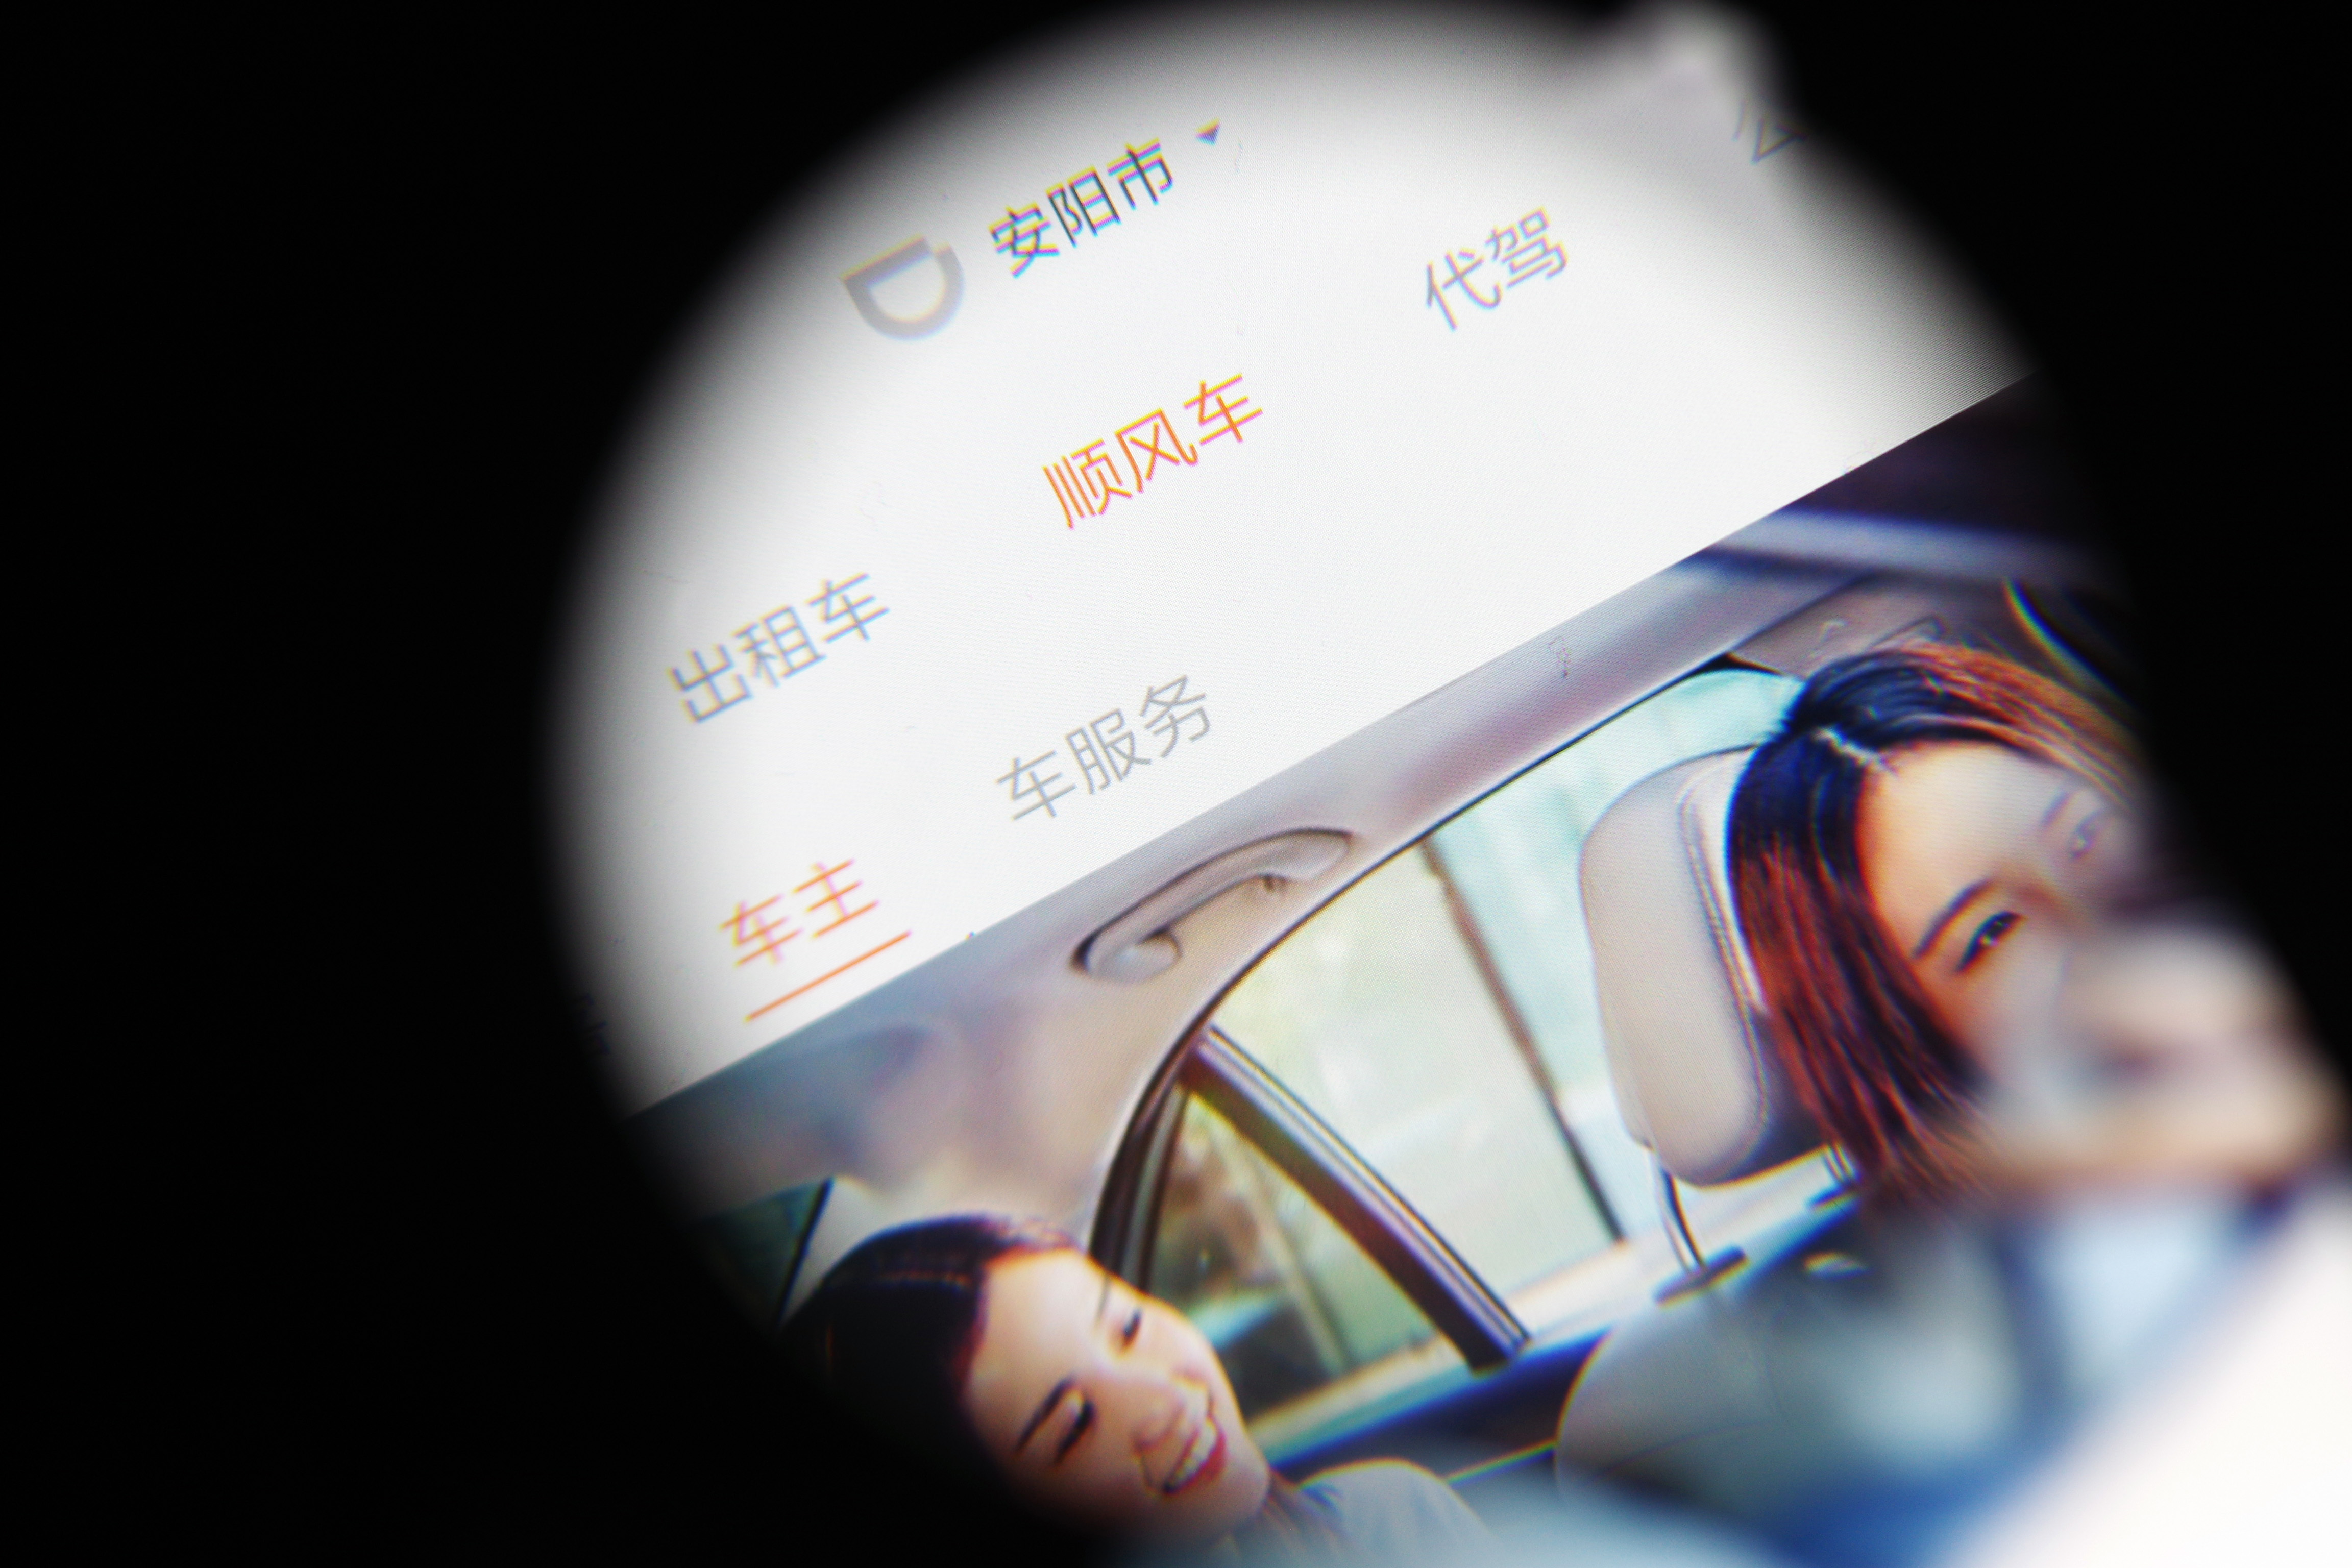 Megerőszakolta és meggyilkolta utasát a kínai Uber egyik sofőrje